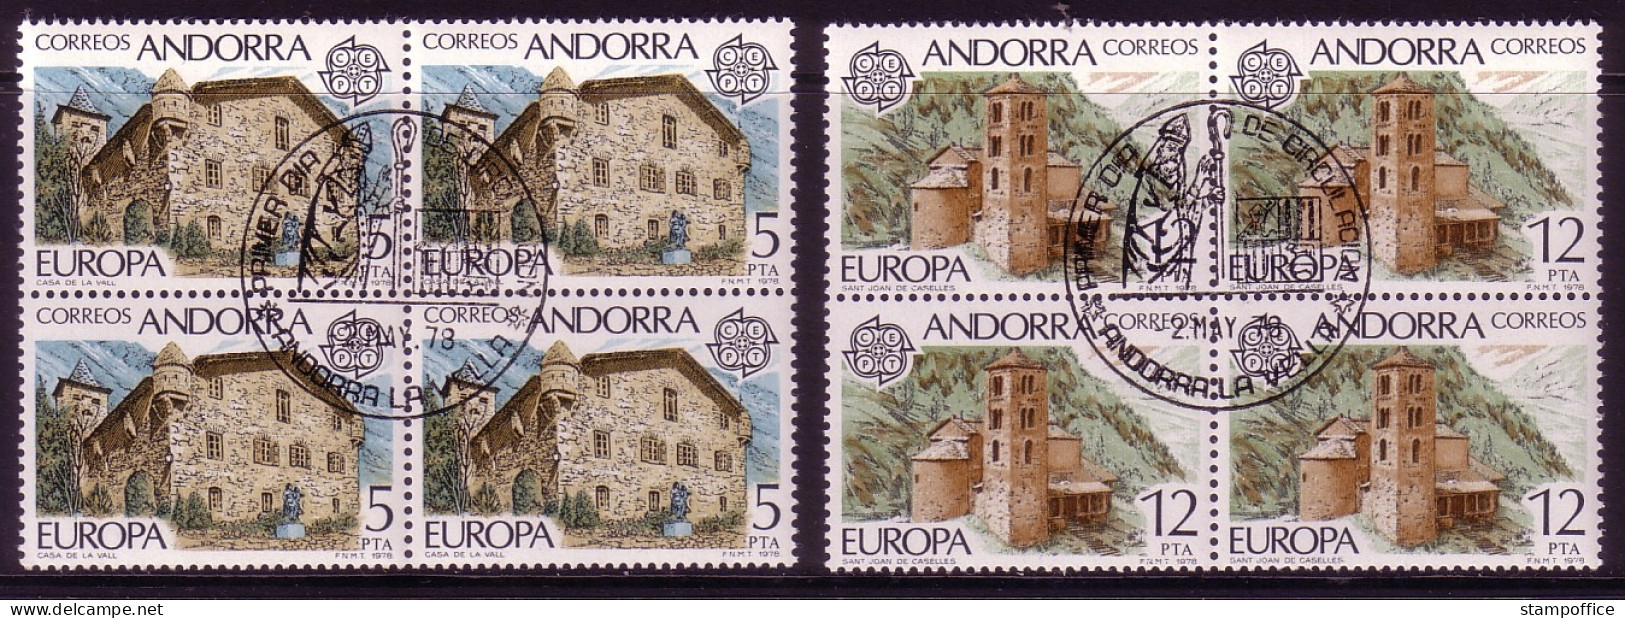 ANDORRA SPANISCH MI-NR. 115-116 GESTEMPELT(USED) 4er BLOCK EUROPA 1978 BAUDENKMÄLER - 1978